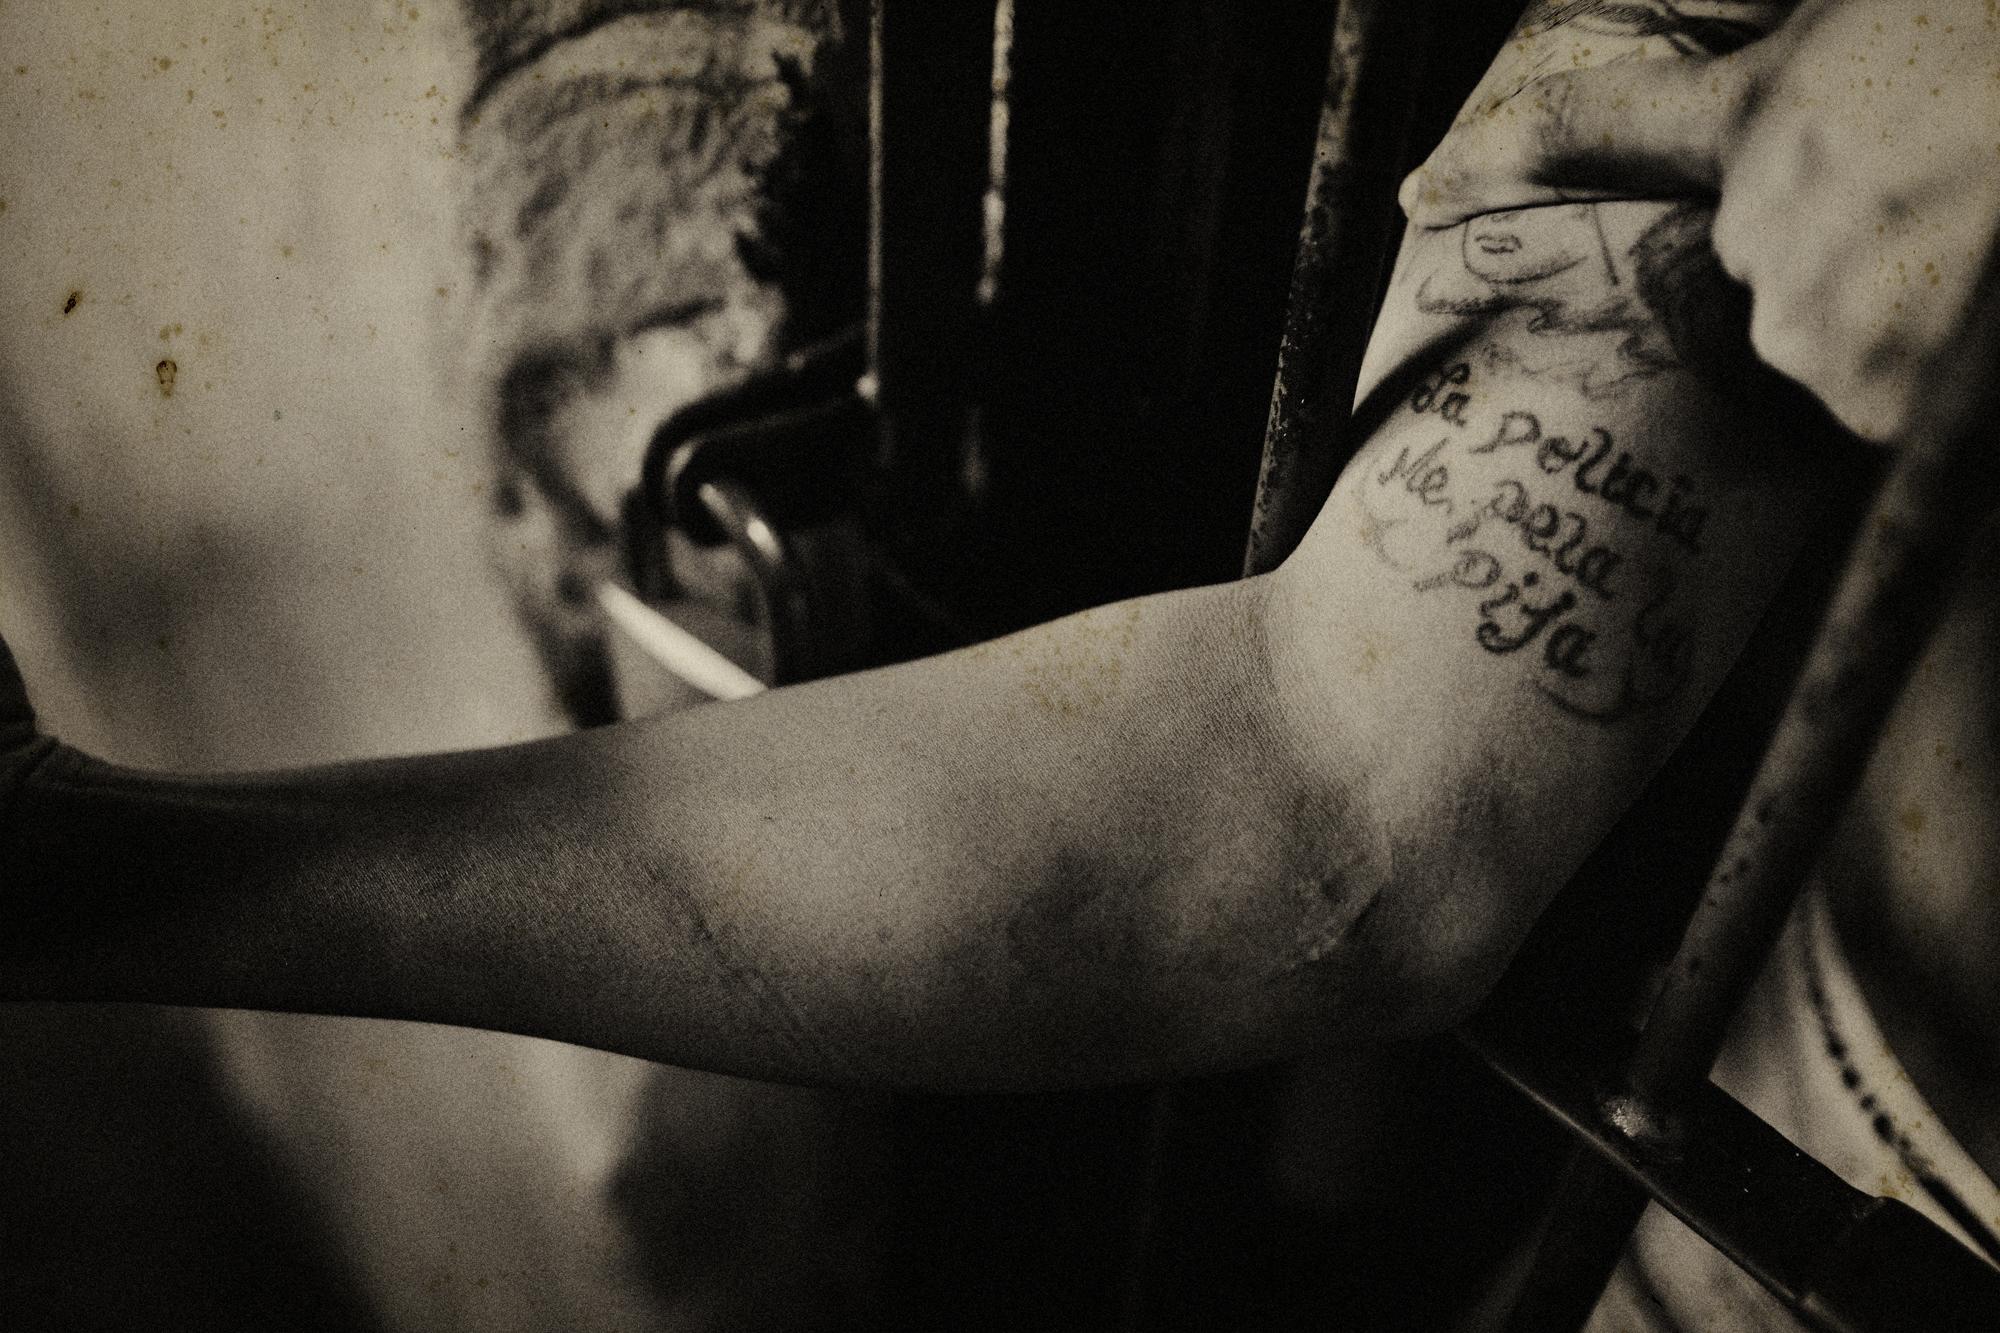 Honduras - Honduras.
February 2008.
An inmate shows his tattoo at...